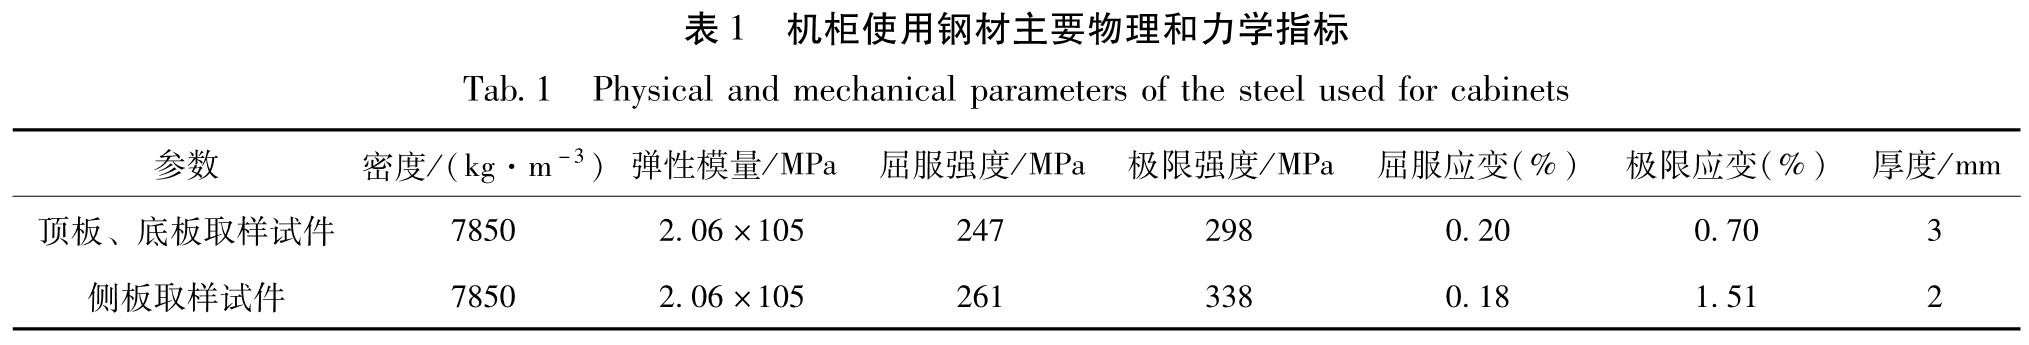 表1 机柜使用钢材主要物理和力学指标<br/>Tab.1 Physical and mechanical parameters of the steel used for cabinets